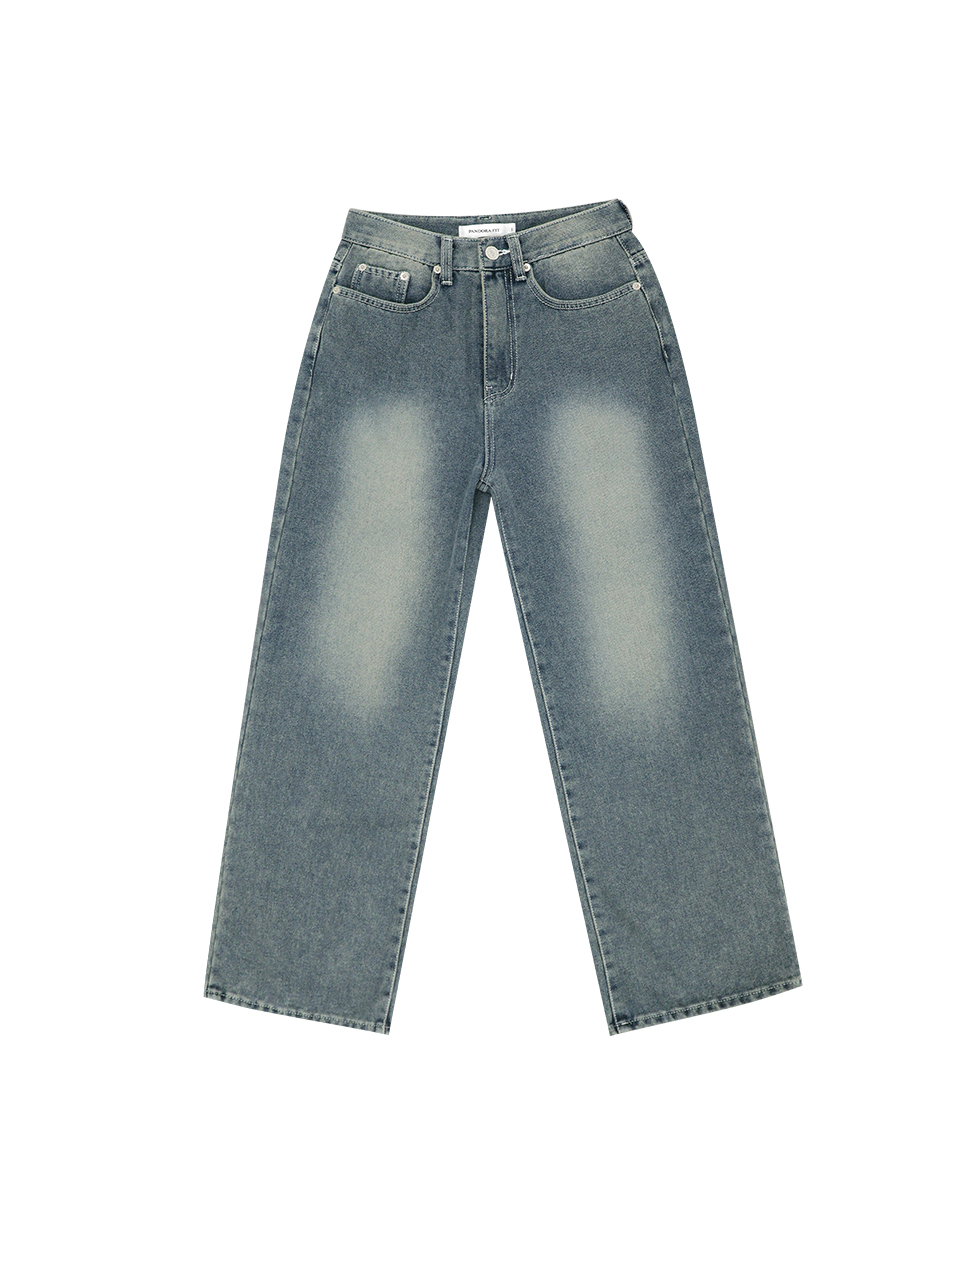 [WIDE] Nicholas Jeans